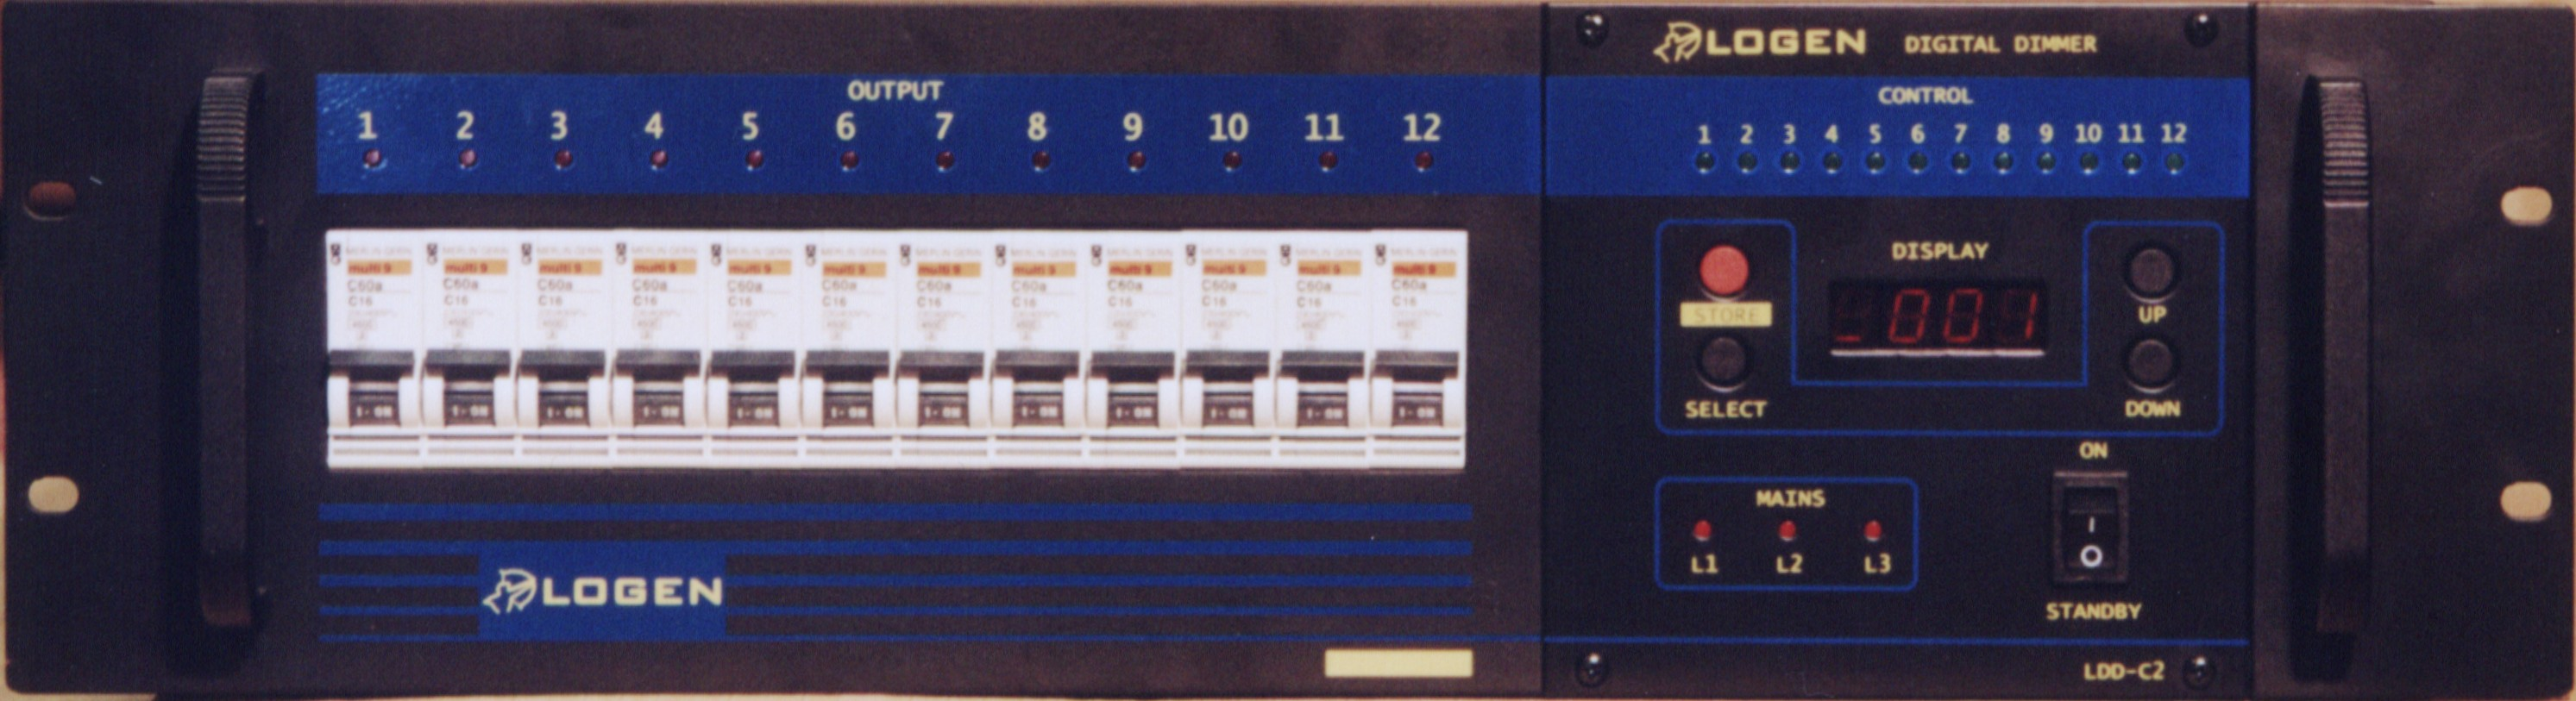 DIGITAL DIMMER LDD1225-C2 v1.00 2,5 kw kimeneti teljesítmény csatornánként DMX 512 és analóg 0.